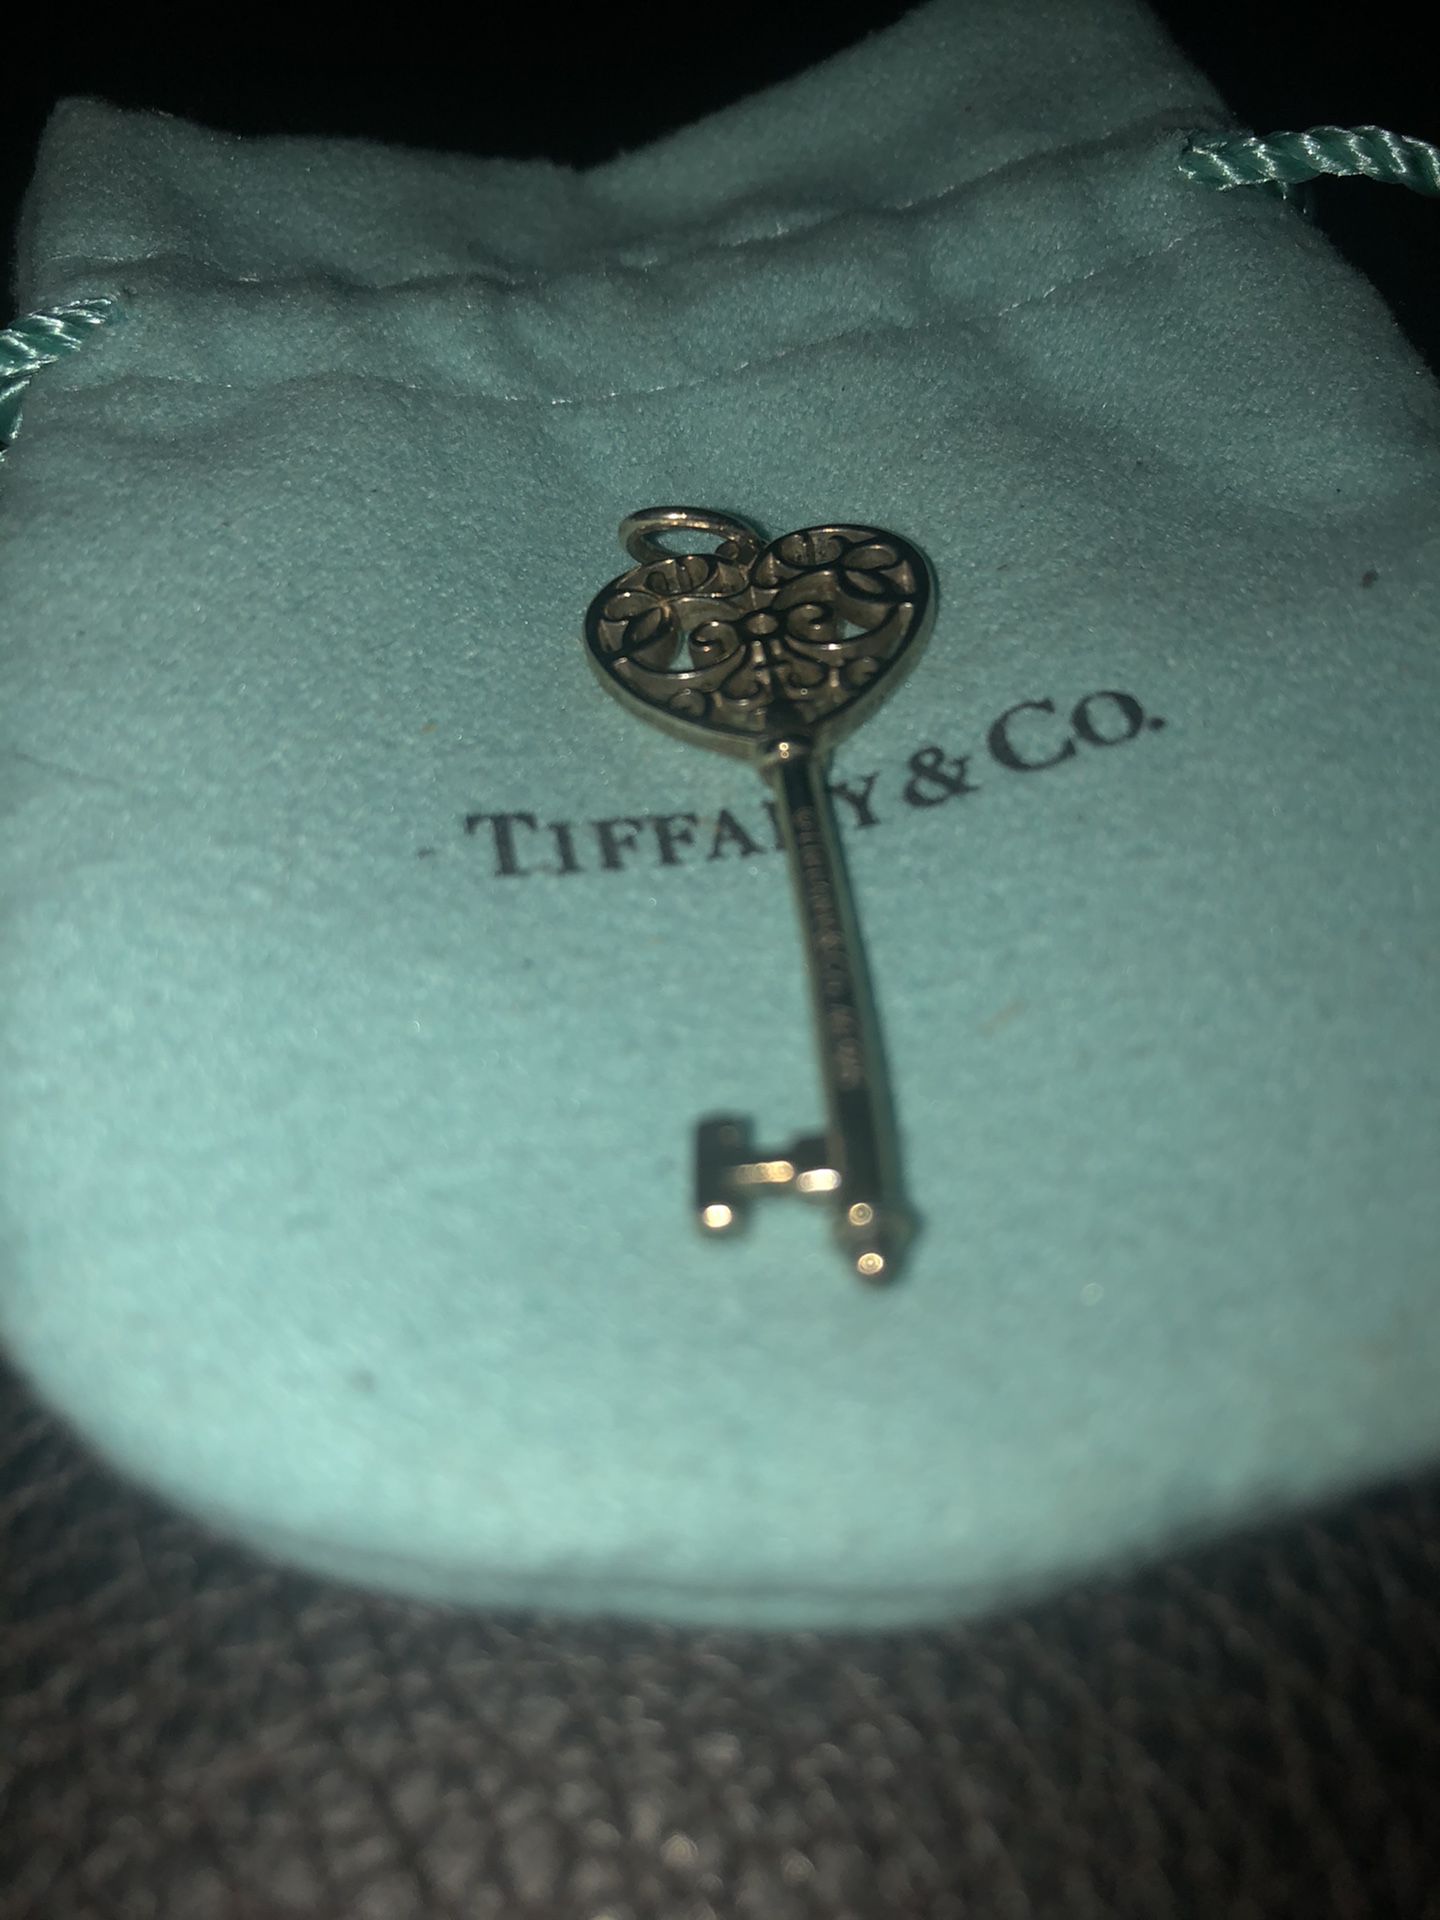 Tiffany key, heart shaped.